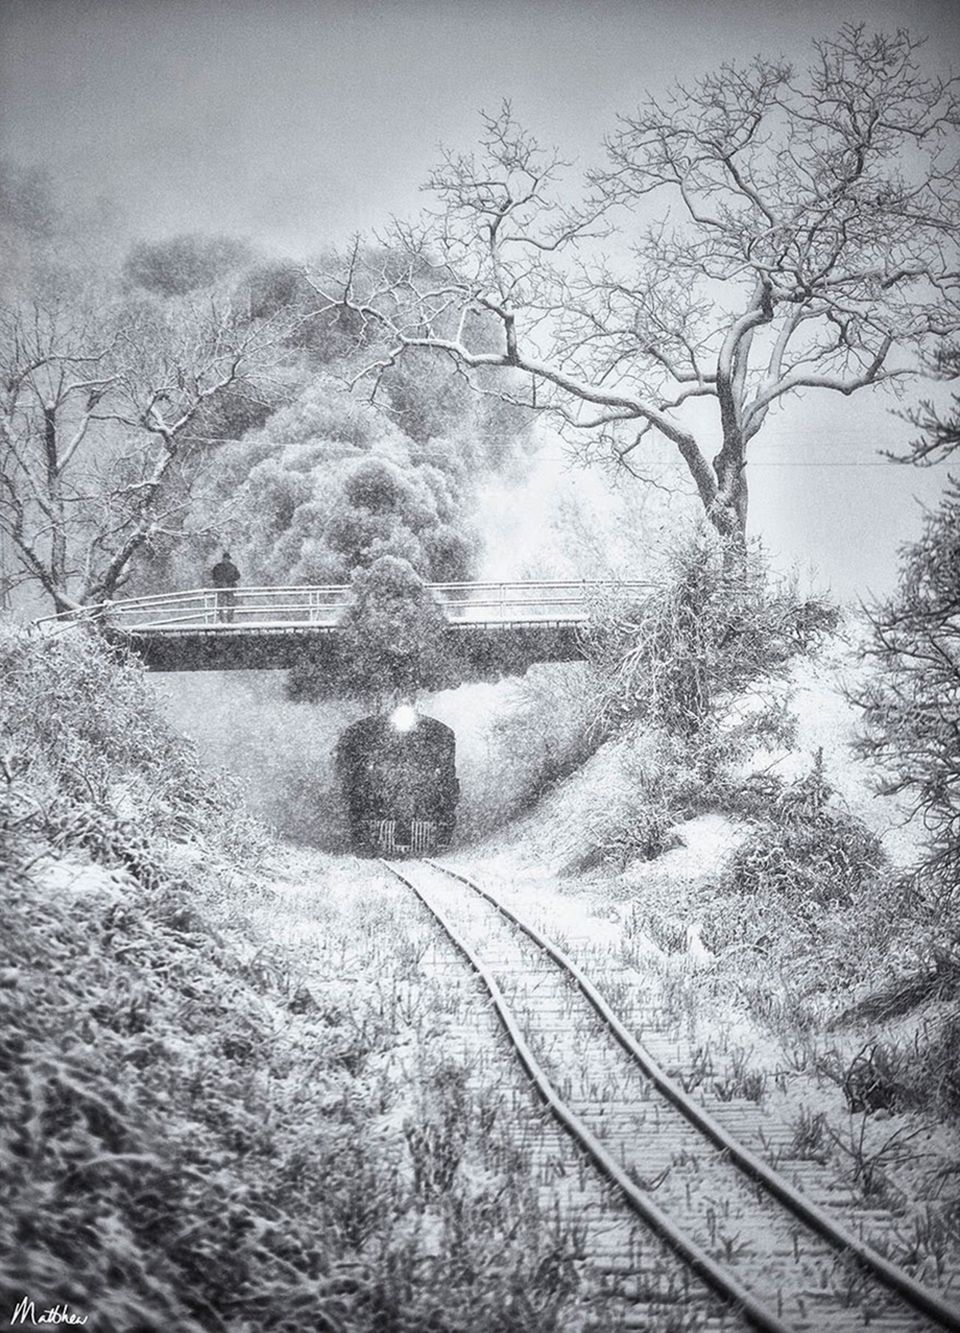 Współczesną serię o pociągach, którą znamy z jego strony Lost Tracks of Time, rozpoczął w 2005 roku. Podróżując po Stanach Zjednoczonych, Matthew fotografuje stare pociągi, niektóre zbudowane nawet ponad 100 lat temu, majestatyczne, oddające ducha tamtych czasów.